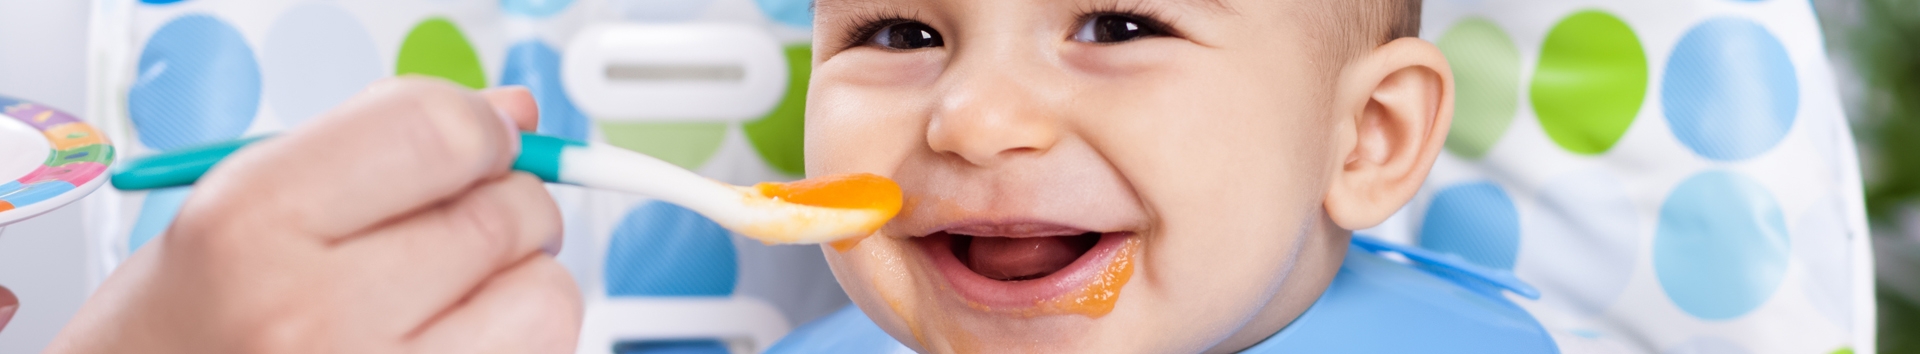 Dicas perfeitas para o seu bebê comer bem e com saúde no verão